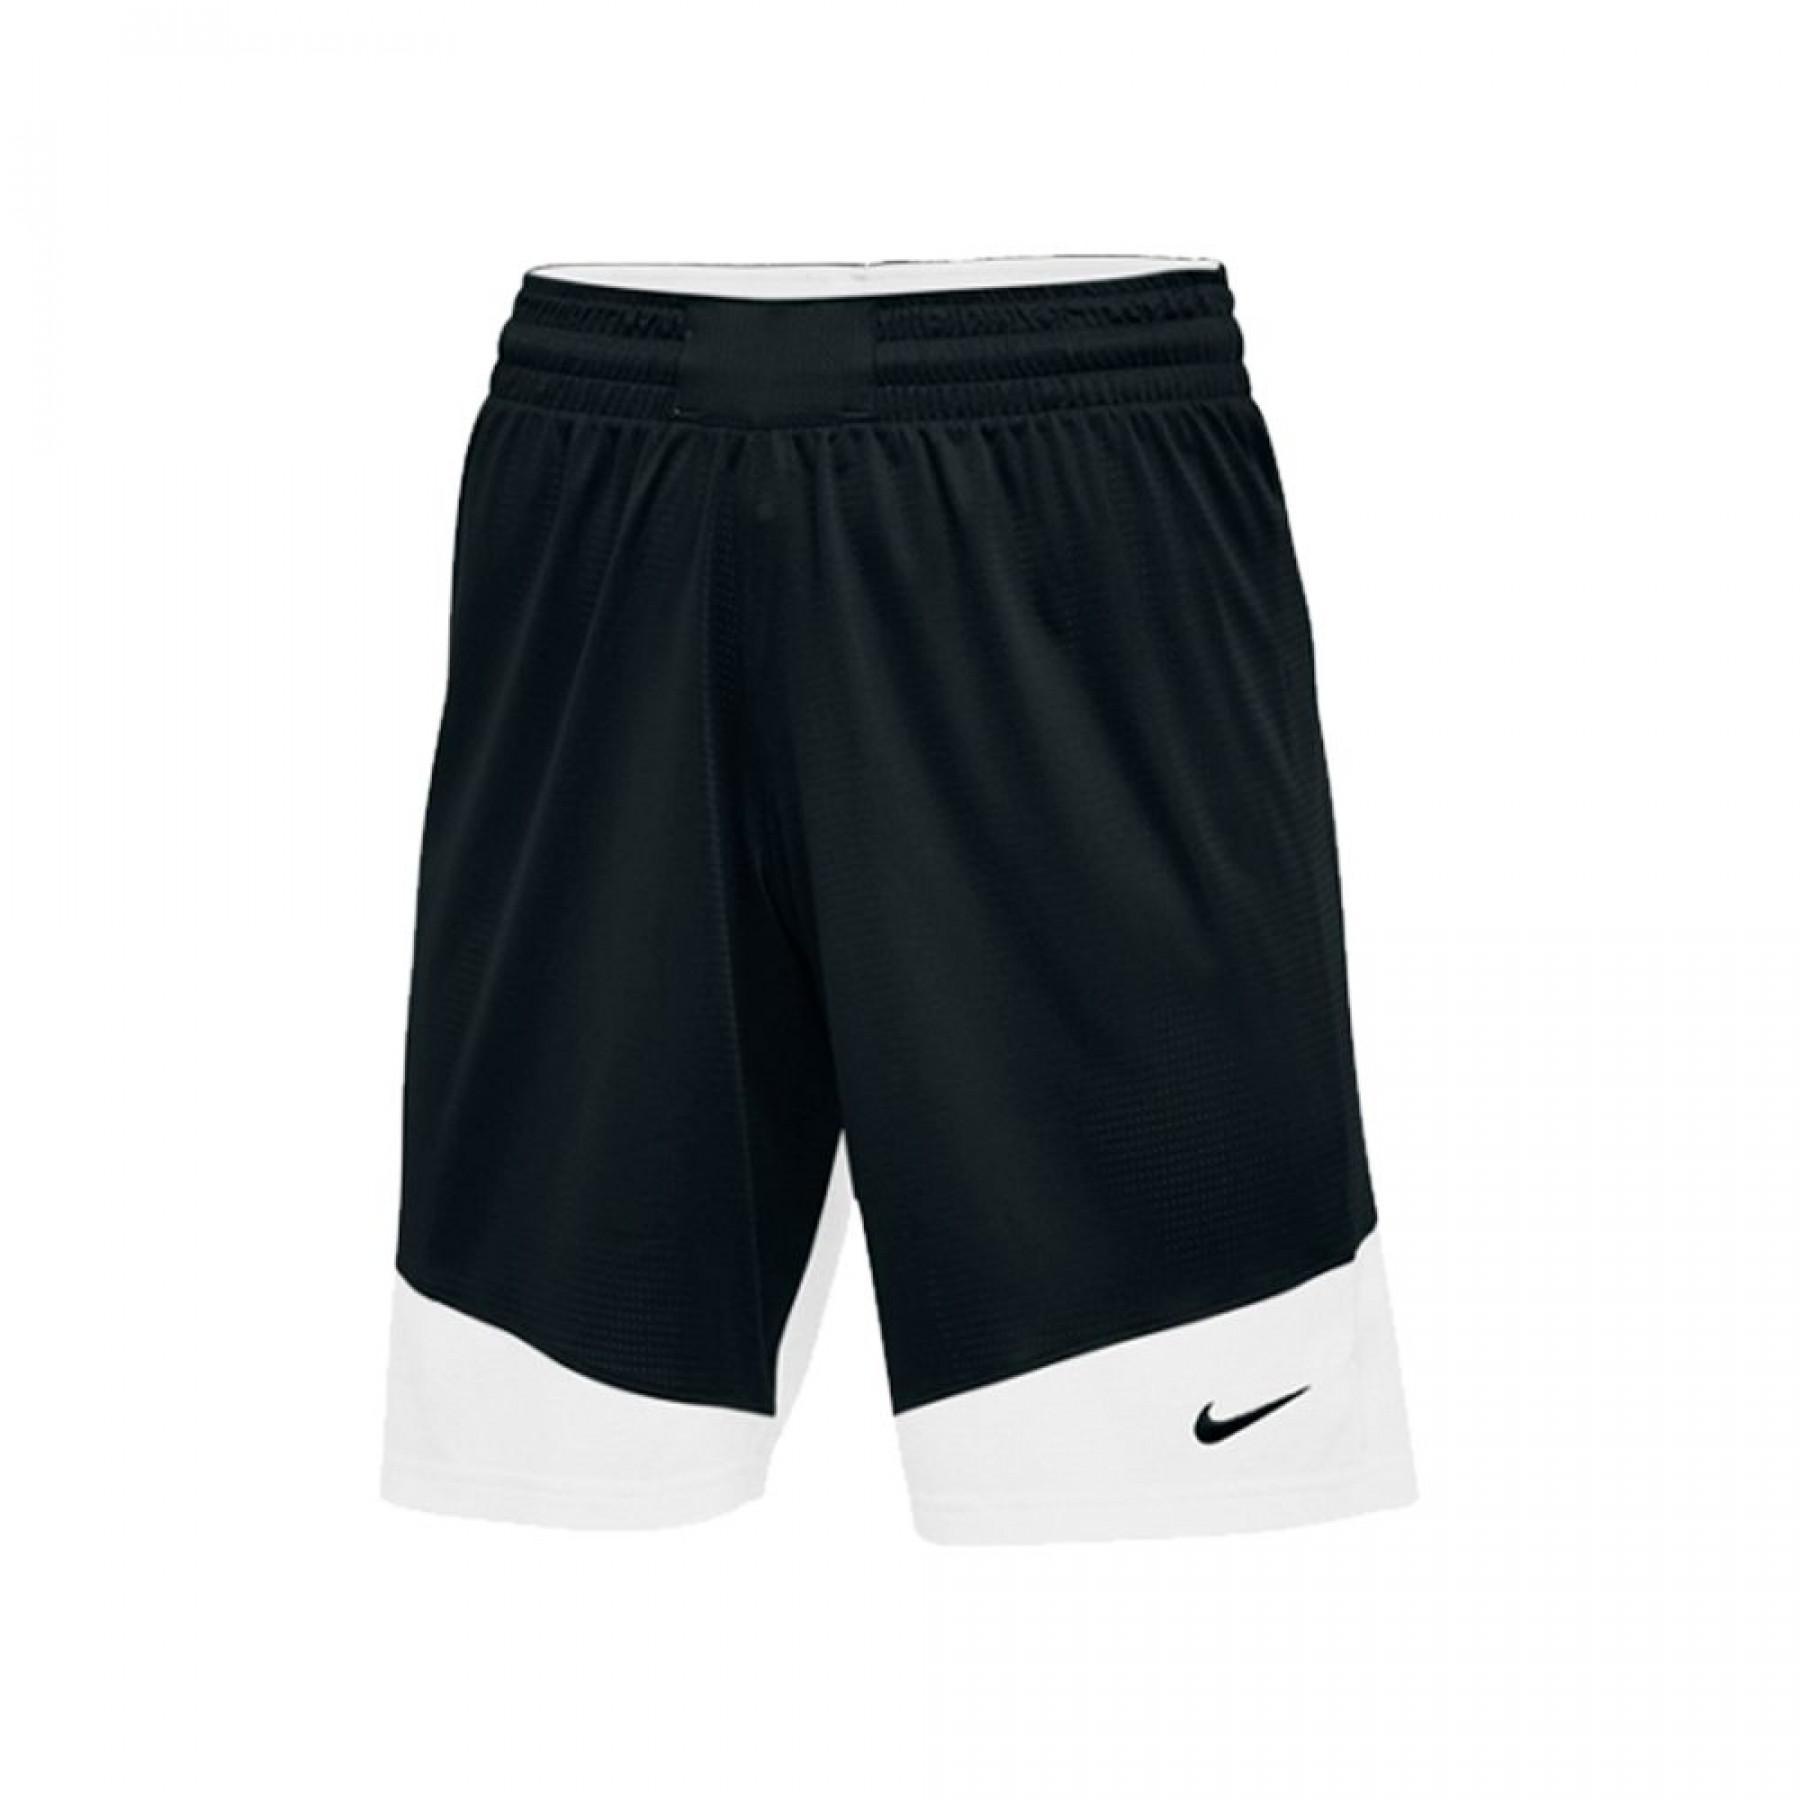 Pantalones cortos de mujer Nike Practice